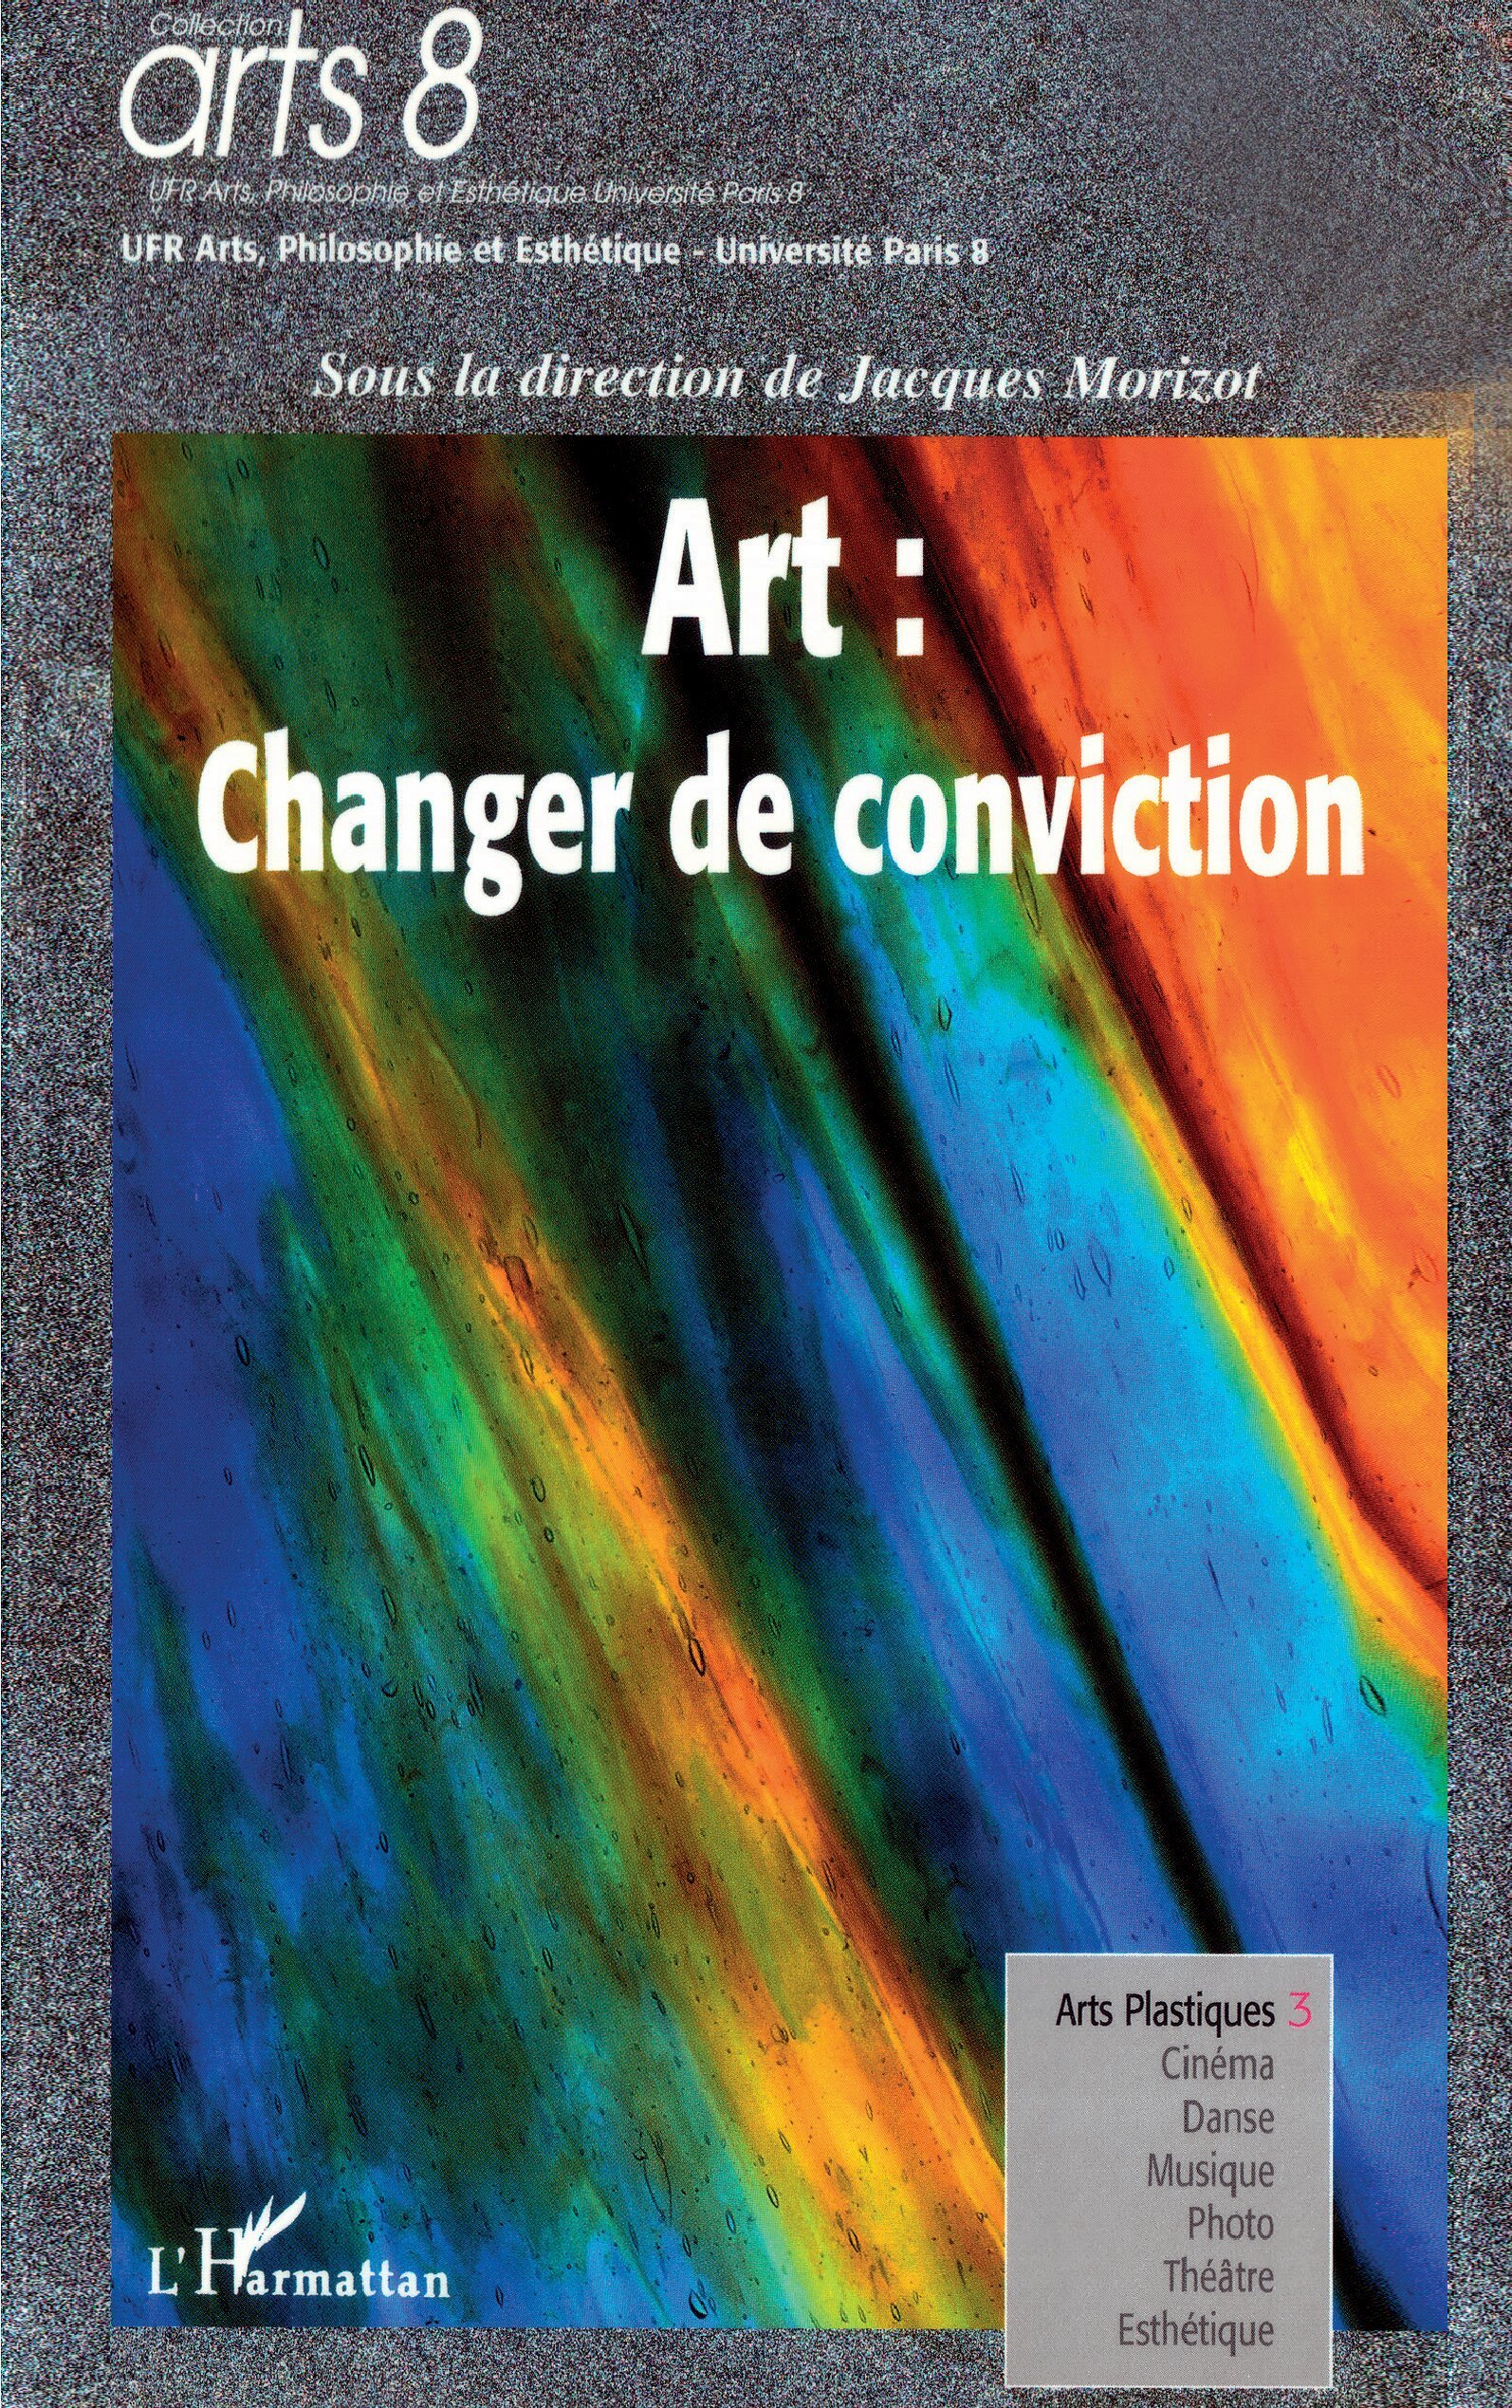 Art: changer de conviction (9782747574426-front-cover)